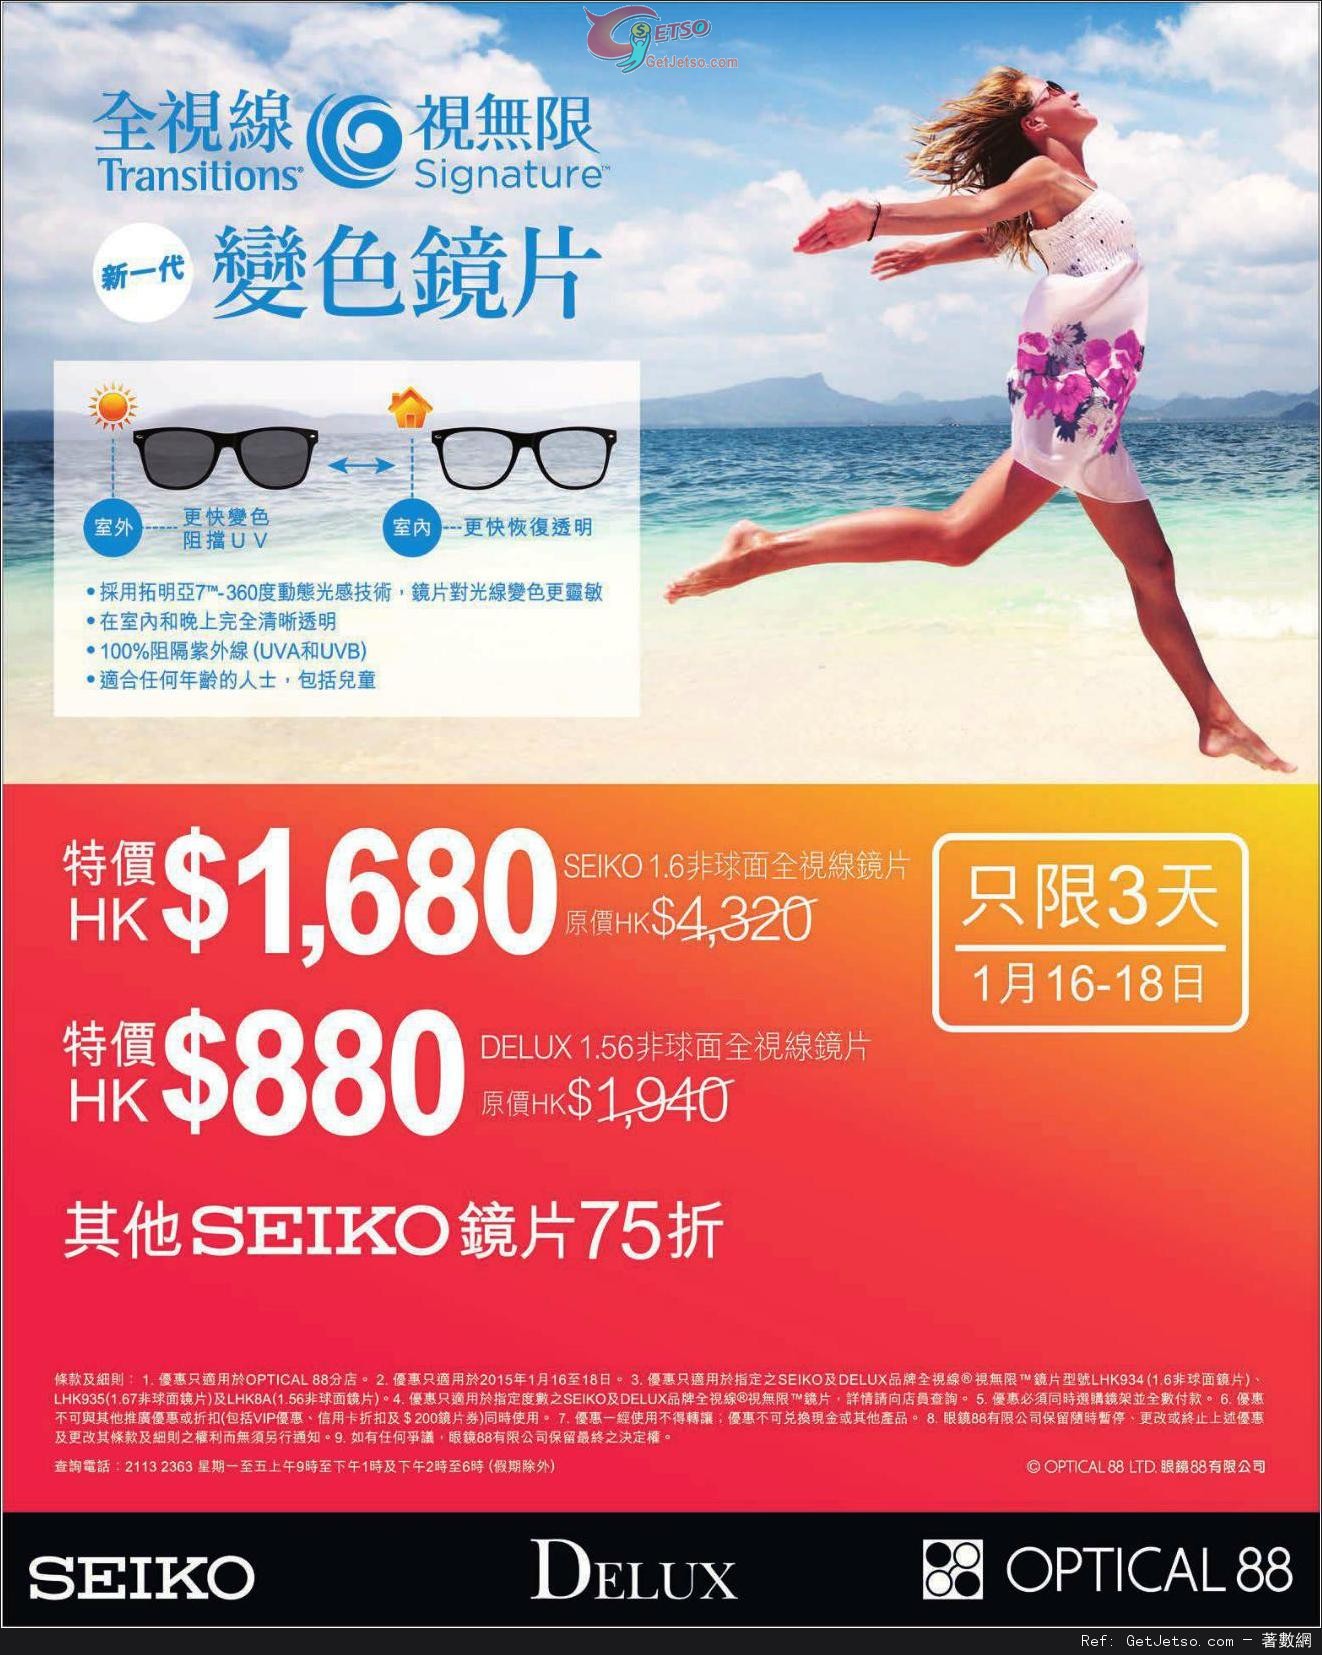 眼鏡88 DELUX及SEIKO鏡片購買優惠(至15年1月18日)圖片1